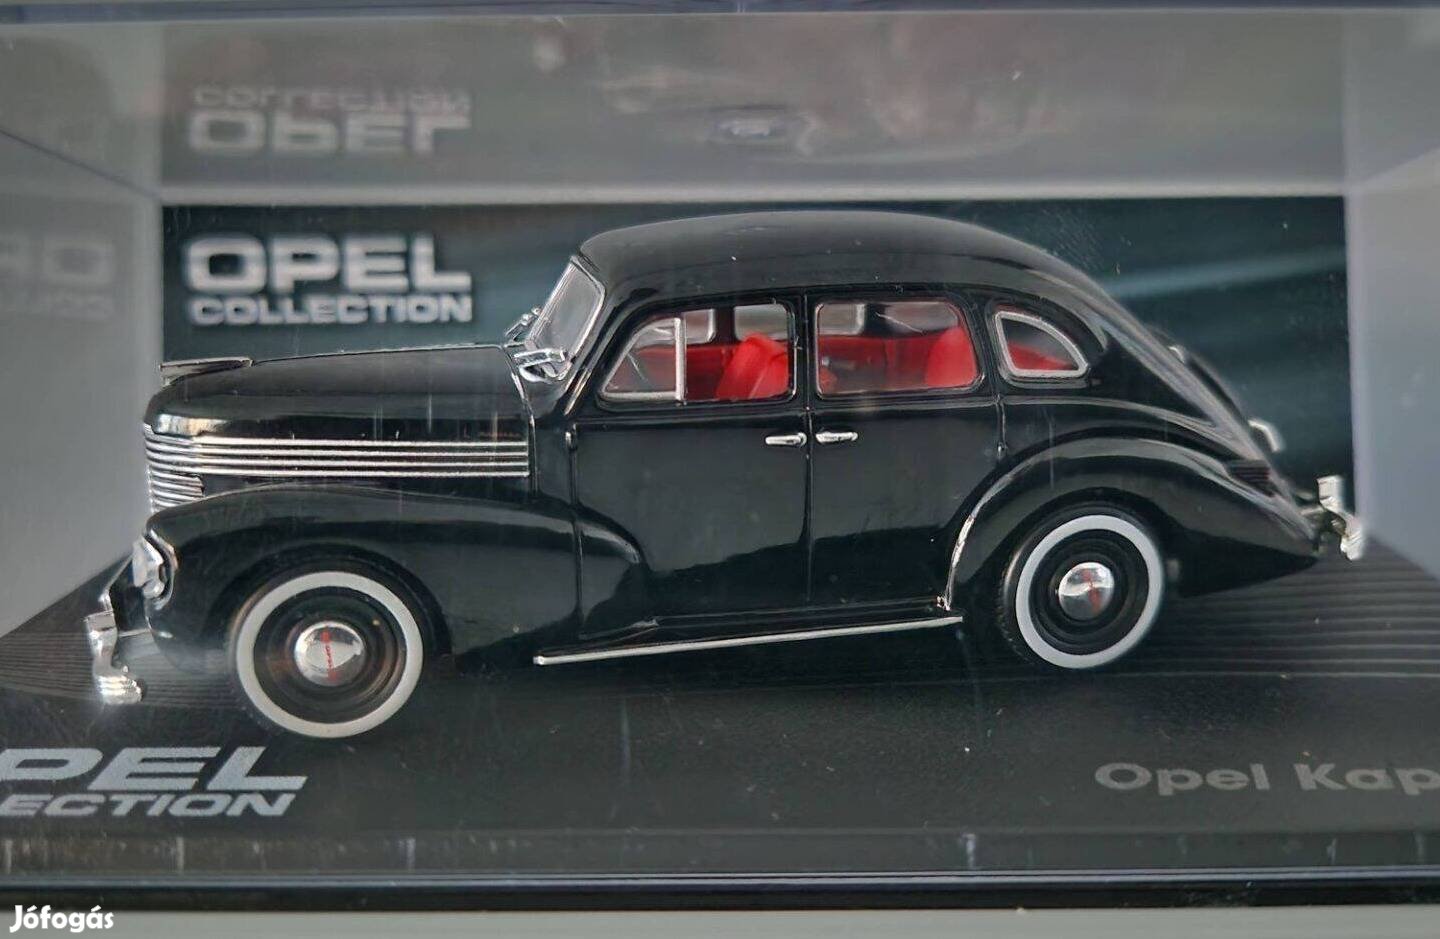 Opel Kapitän1:43 1/43 modell Opel Collection kisautó Altaya